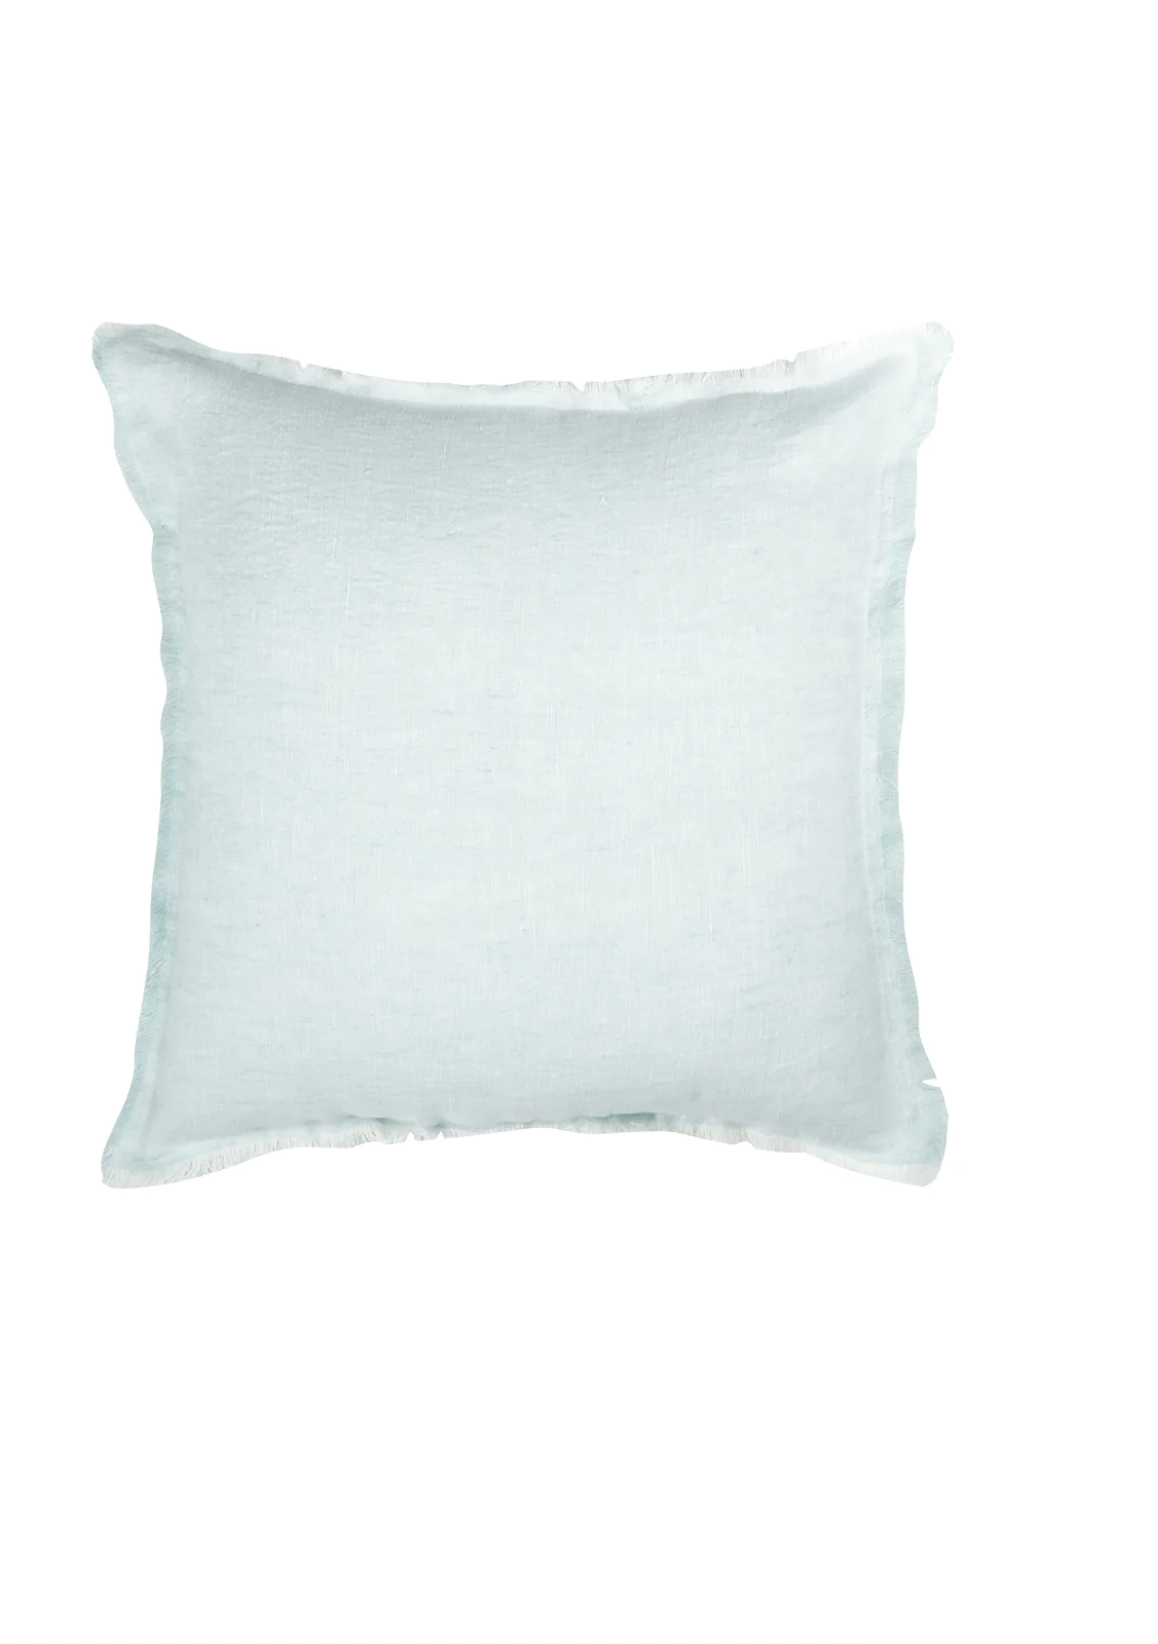 Light Aqua Linen Pillows